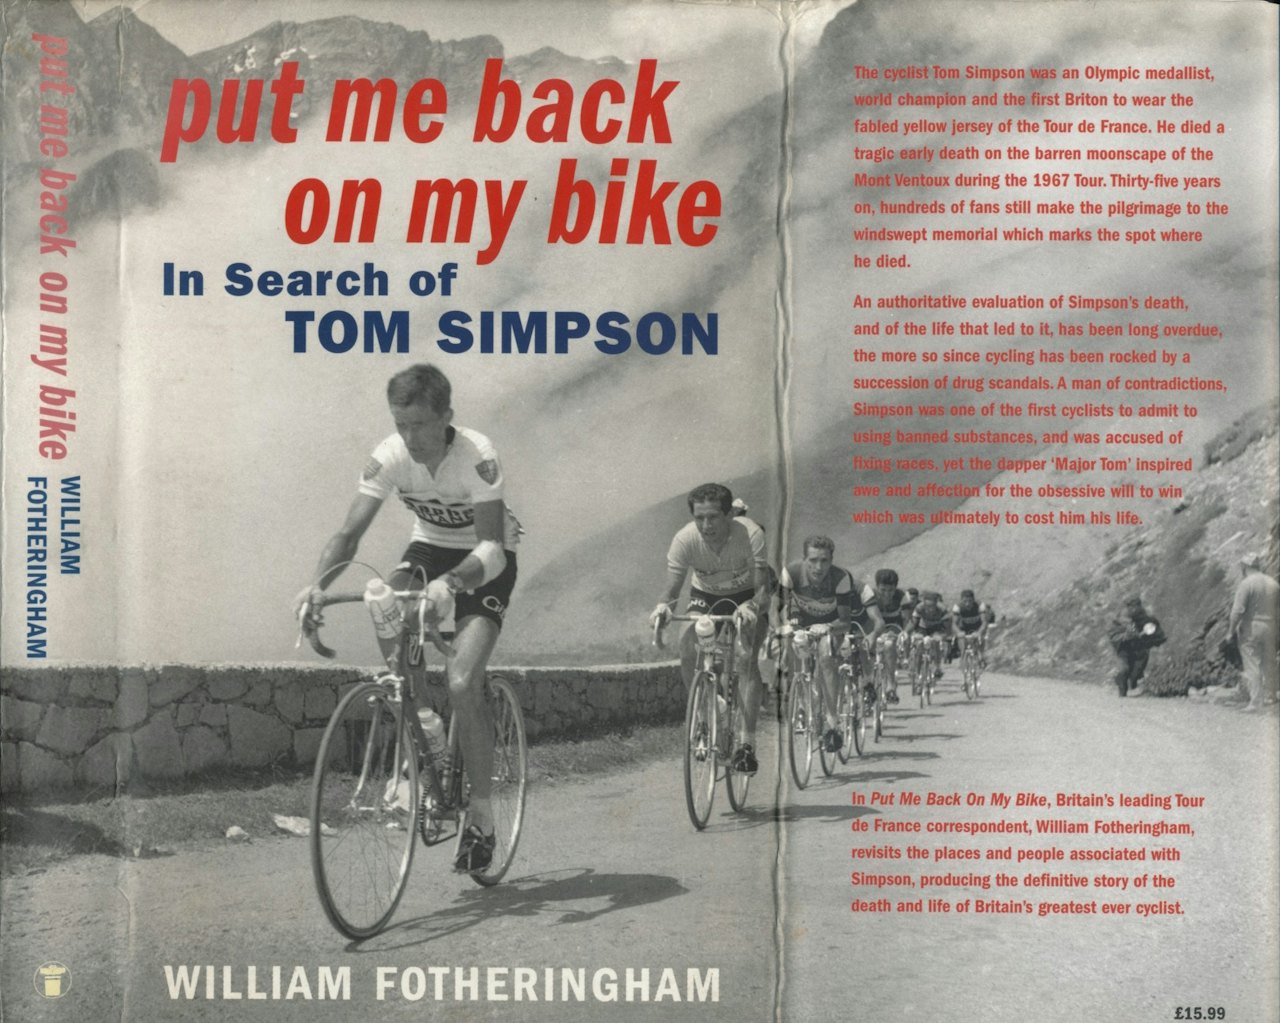 OBLIGATORISK: Boken om Tom Simpson er obligatorisk lesing for enhver landeveissyklist. 